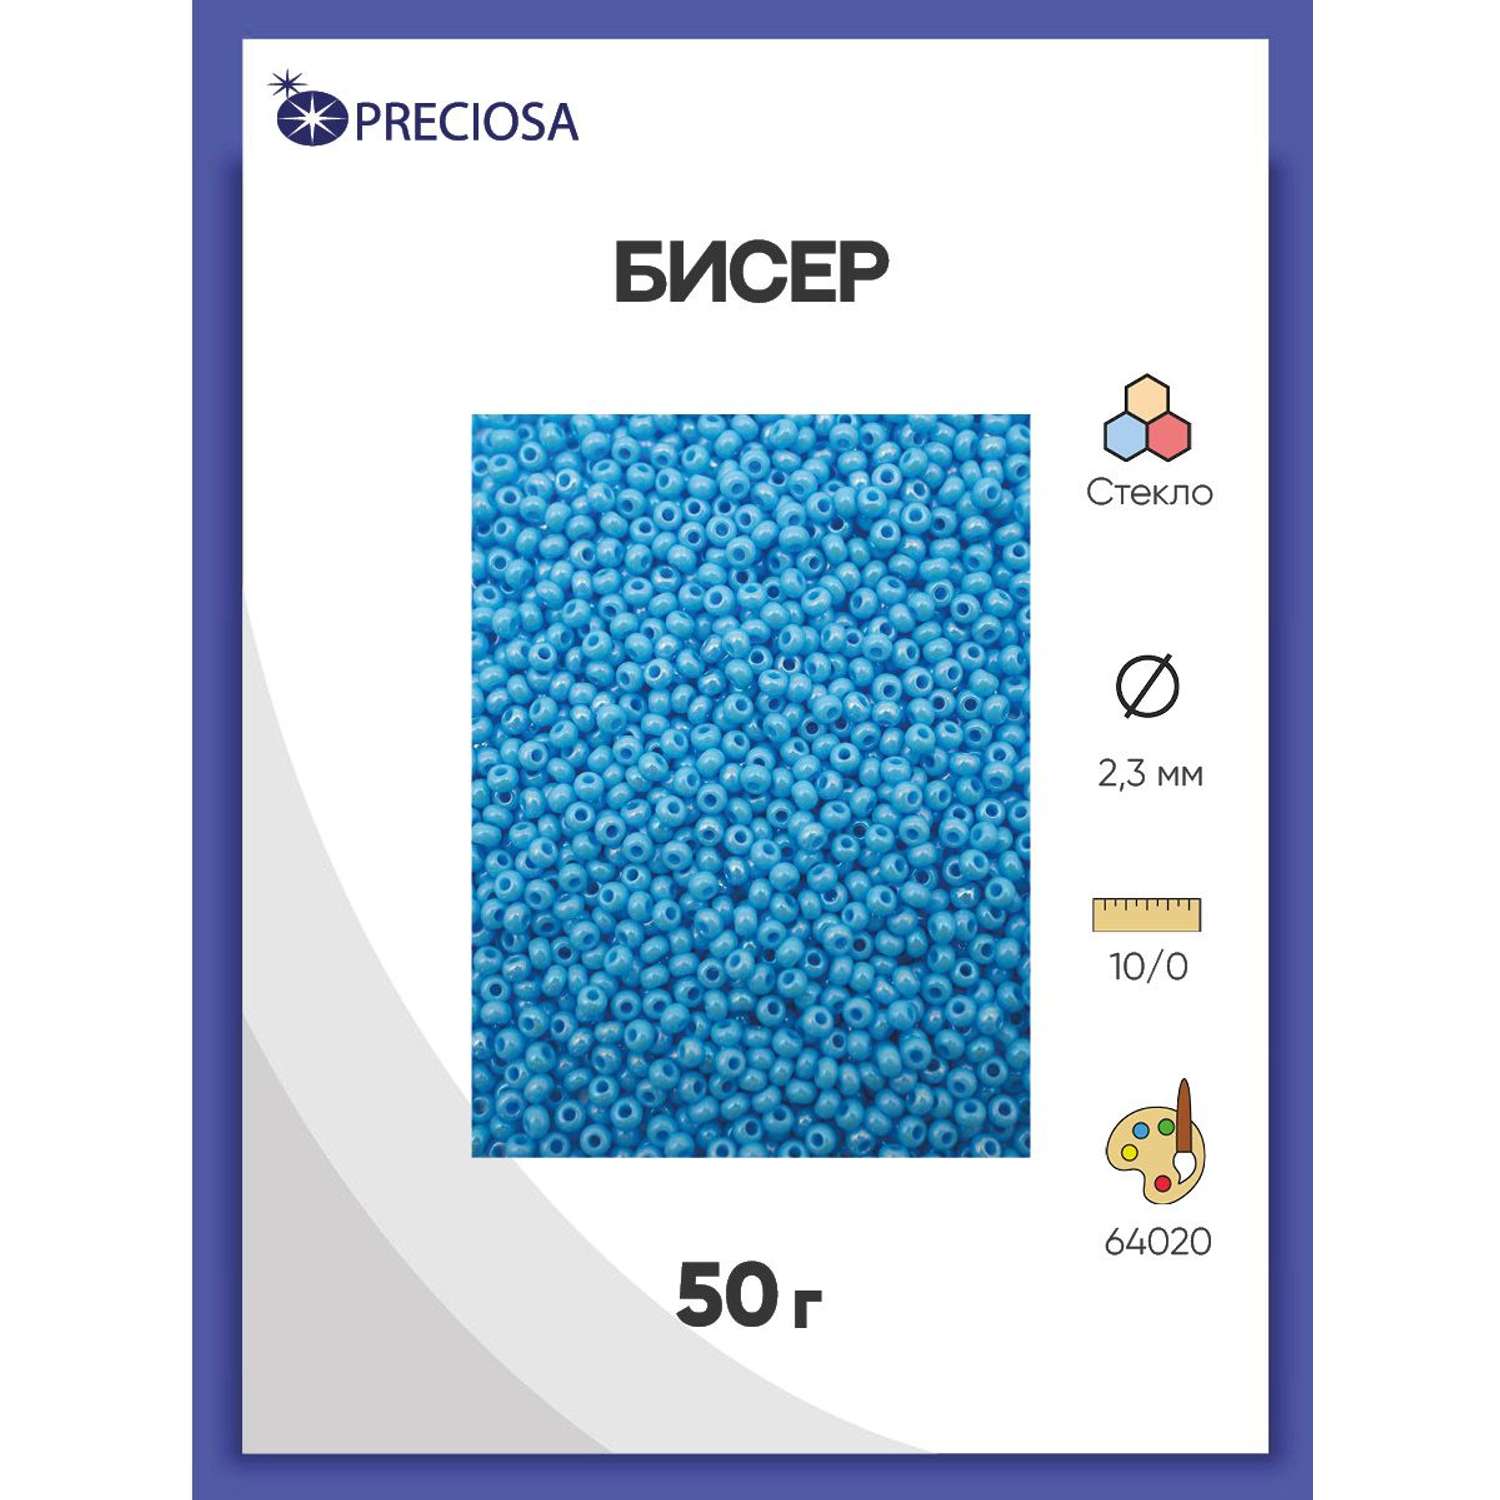 Бисер Preciosa чешский непрозрачный радужный 10/0 50 г Прециоза 64020 голубой - фото 1